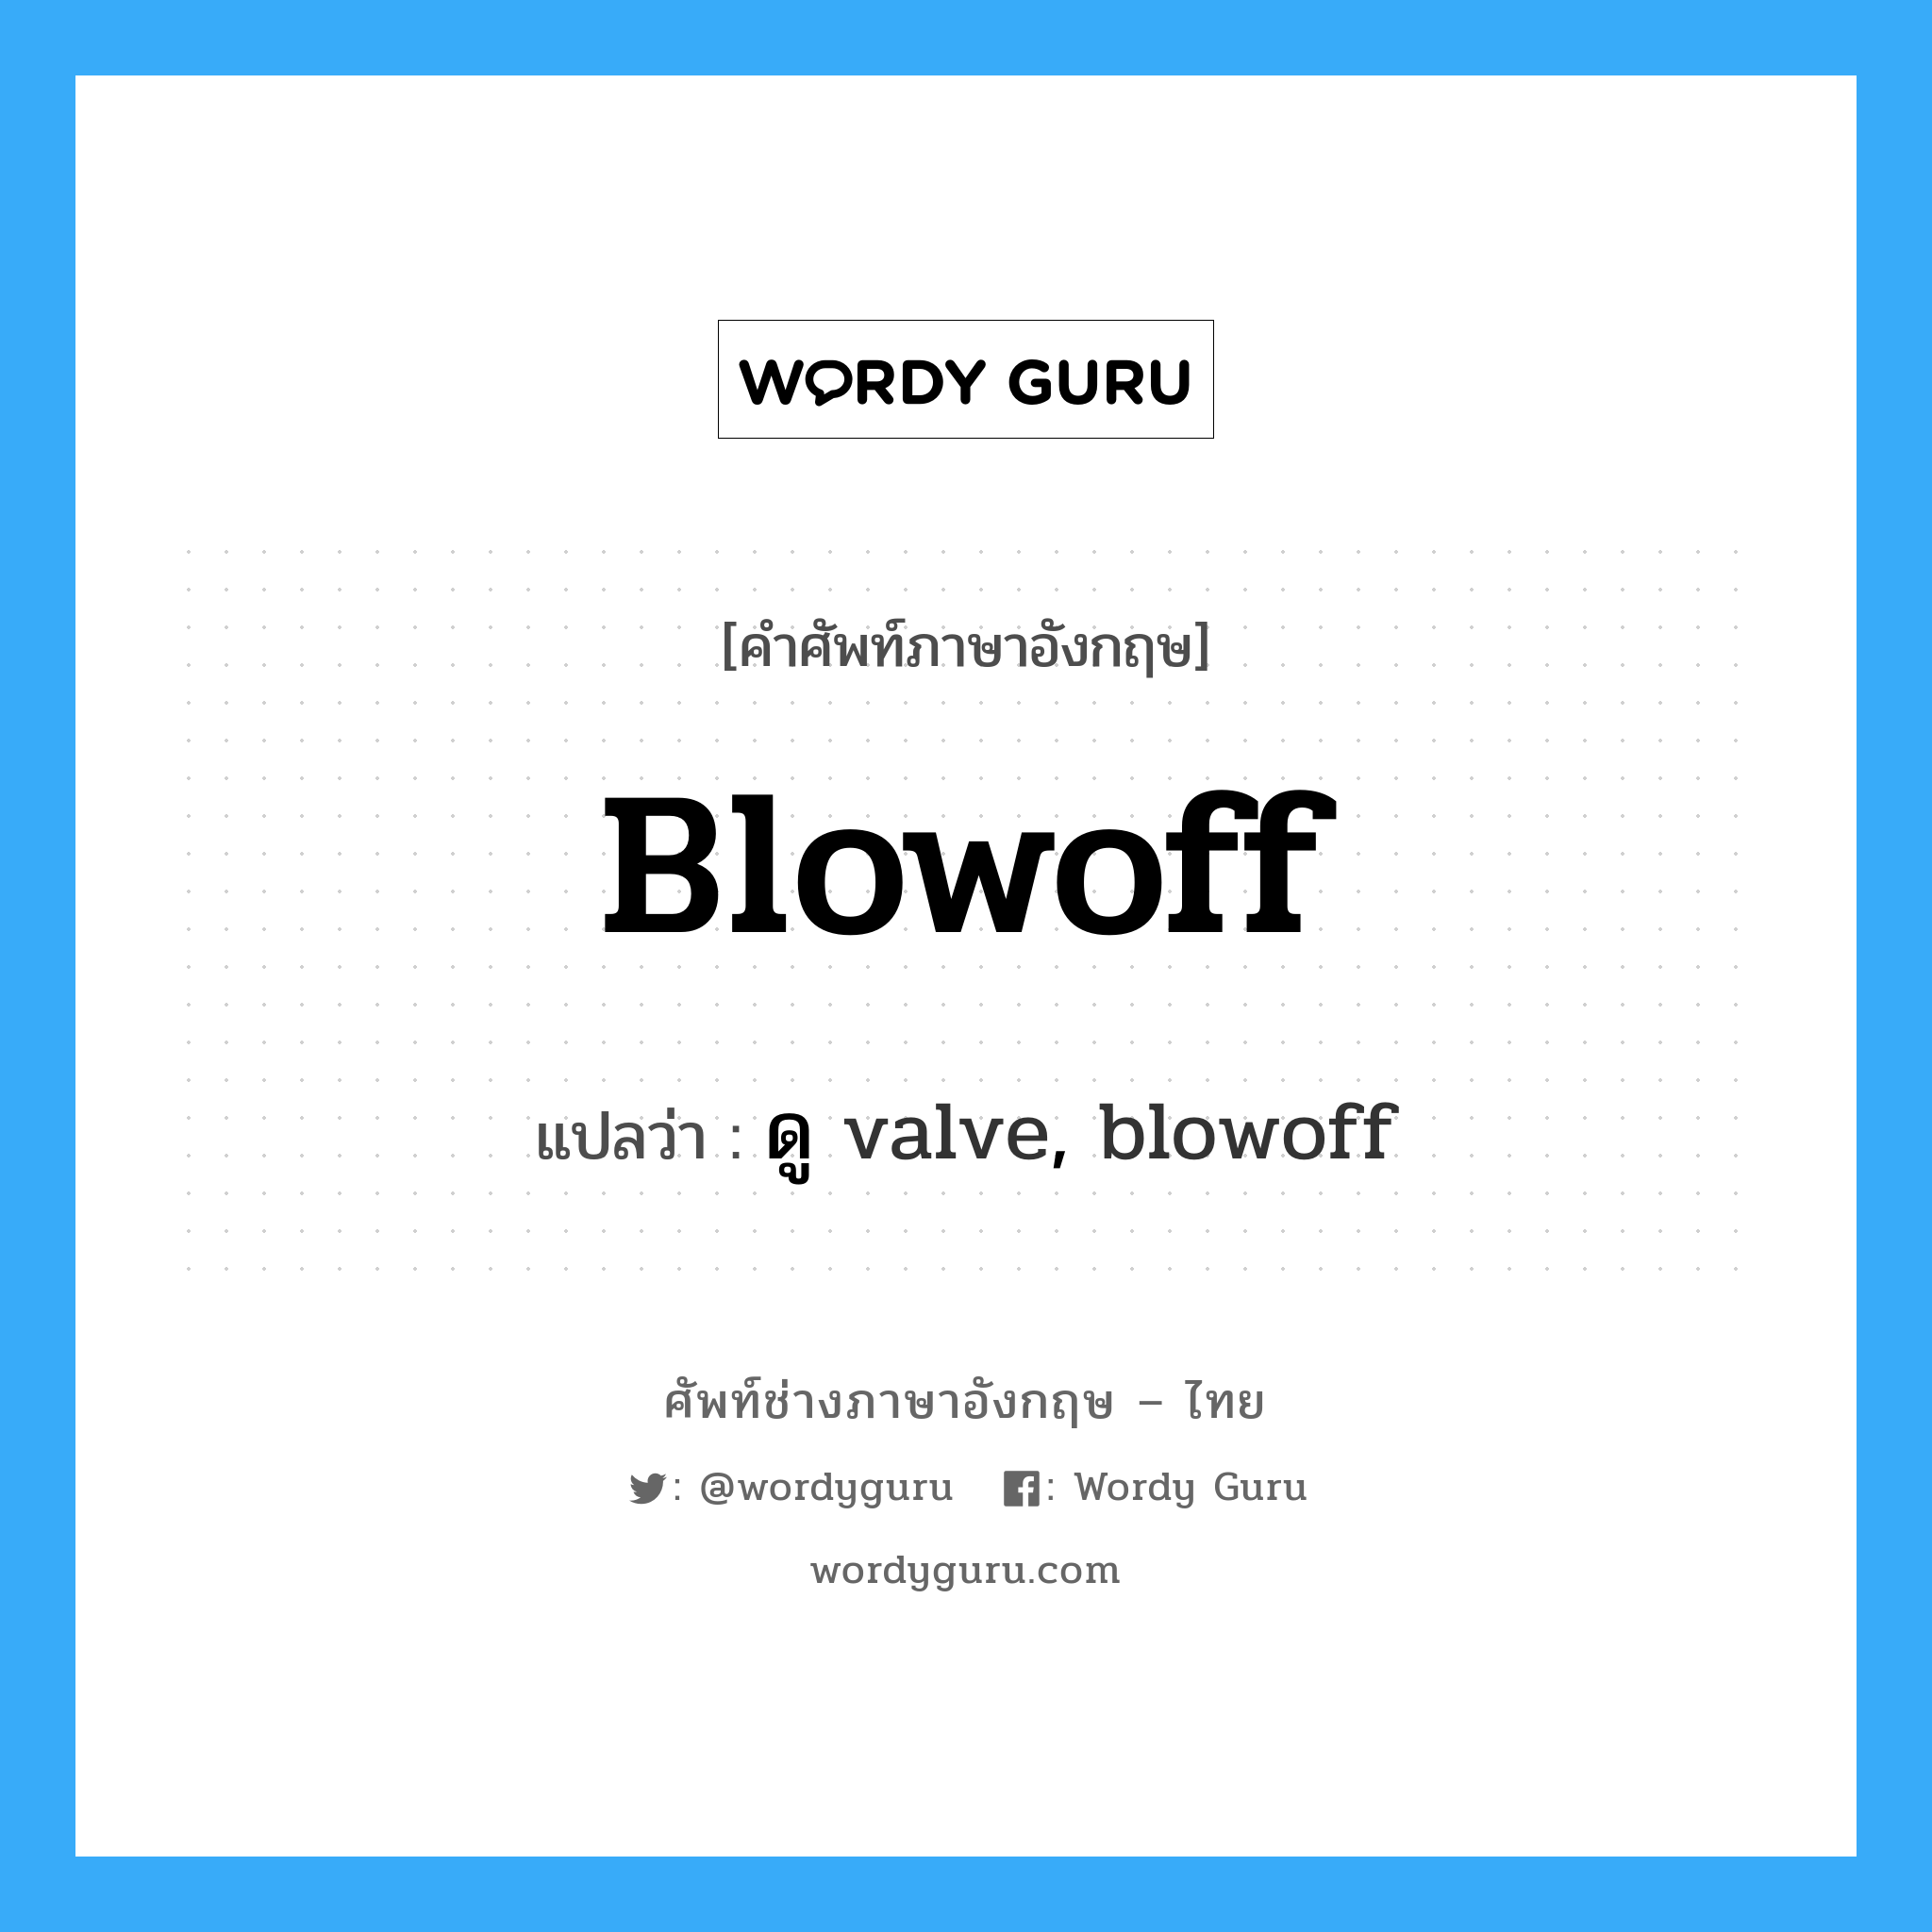 ดู valve, blowoff ภาษาอังกฤษ?, คำศัพท์ช่างภาษาอังกฤษ - ไทย ดู valve, blowoff คำศัพท์ภาษาอังกฤษ ดู valve, blowoff แปลว่า blowoff